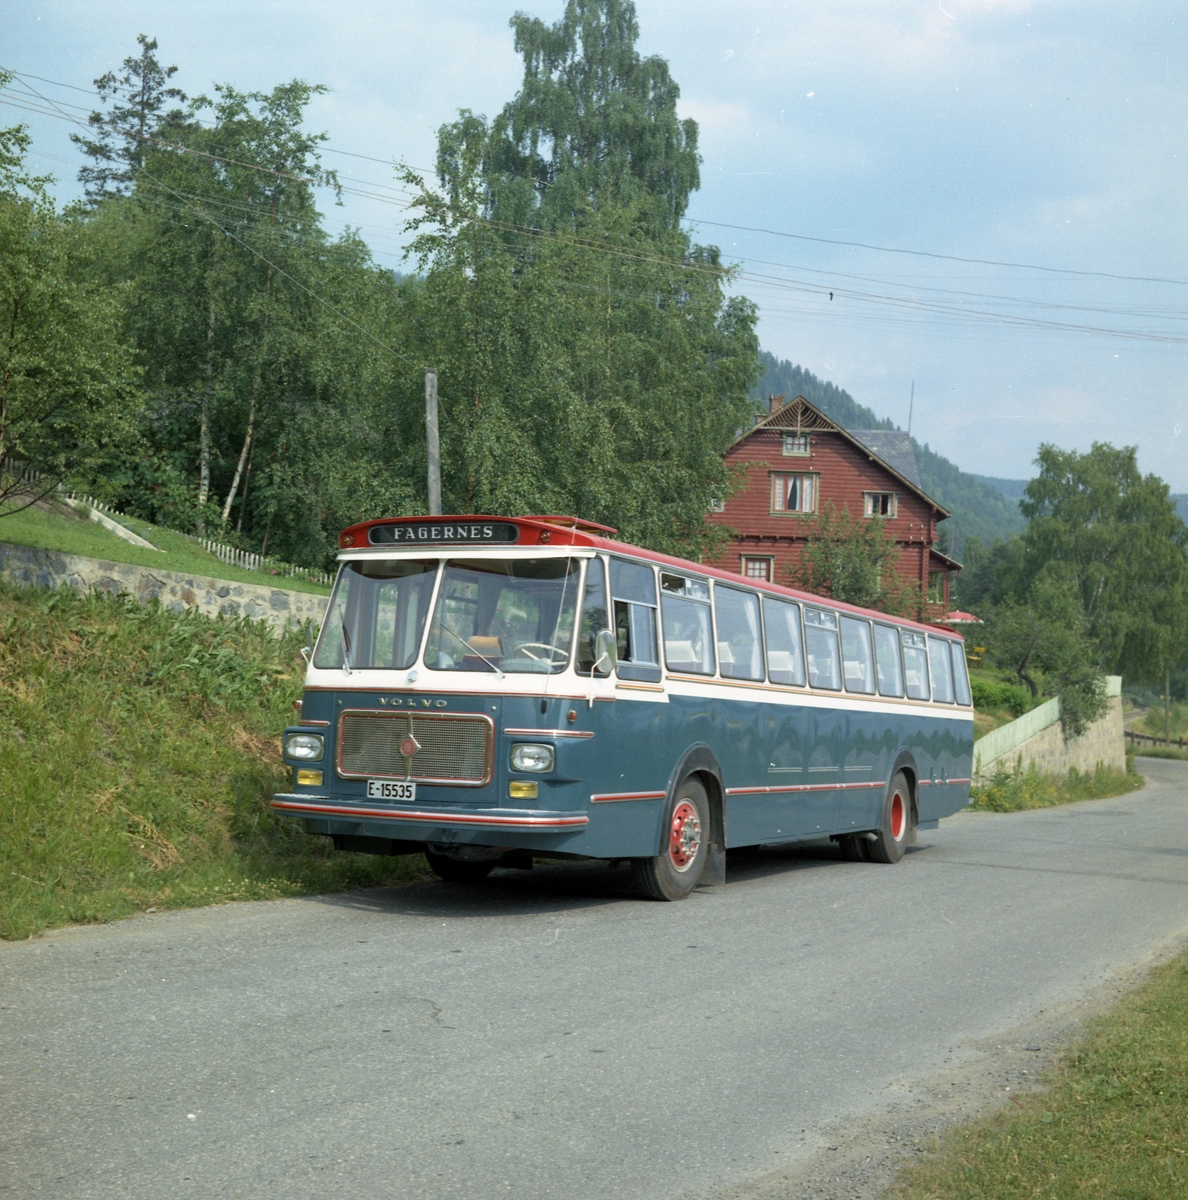 E-15535, buss tilhørende A.S Jotunheimen og Valdresruten Bilselskap.